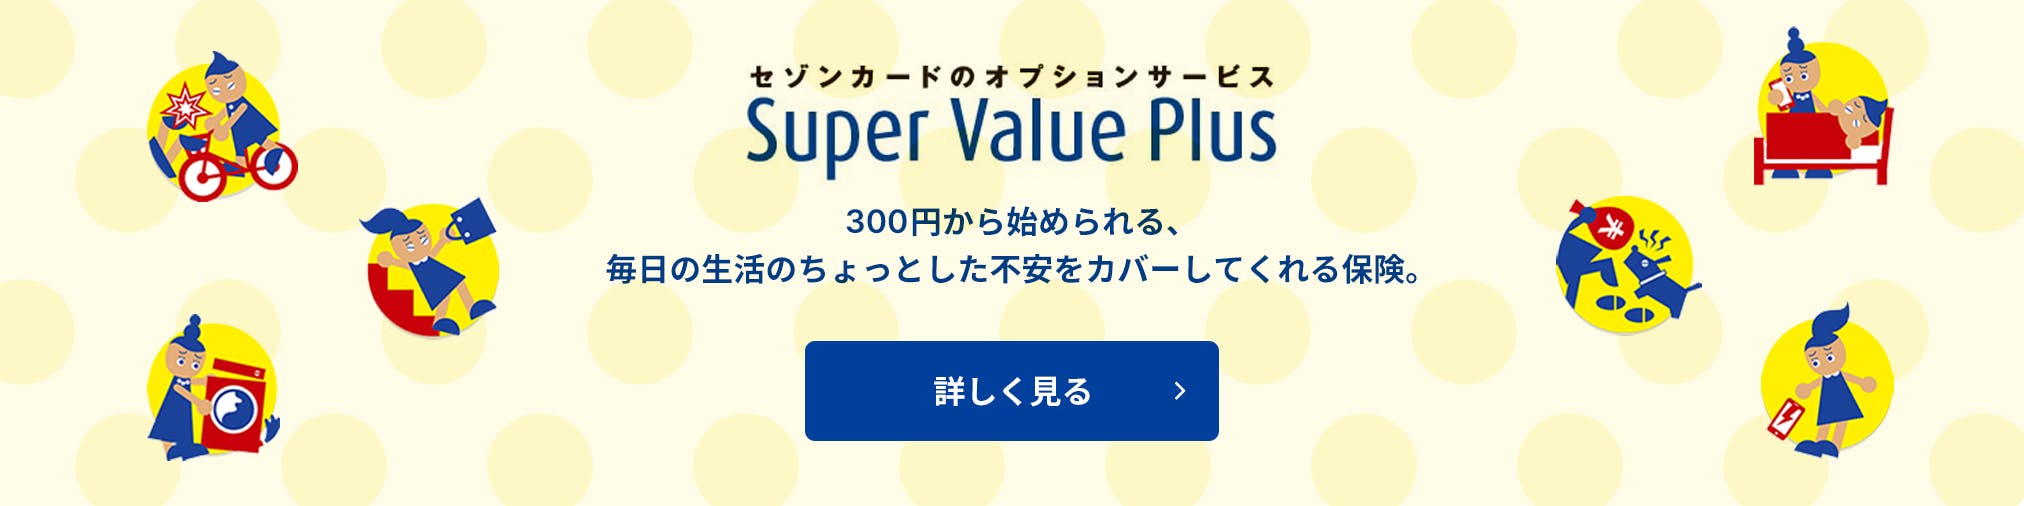 セゾンカードのオプションサービス「Super Value Plus」：300円から始められる、毎日の生活のちょっとした不安をカバーしてくれる保険。